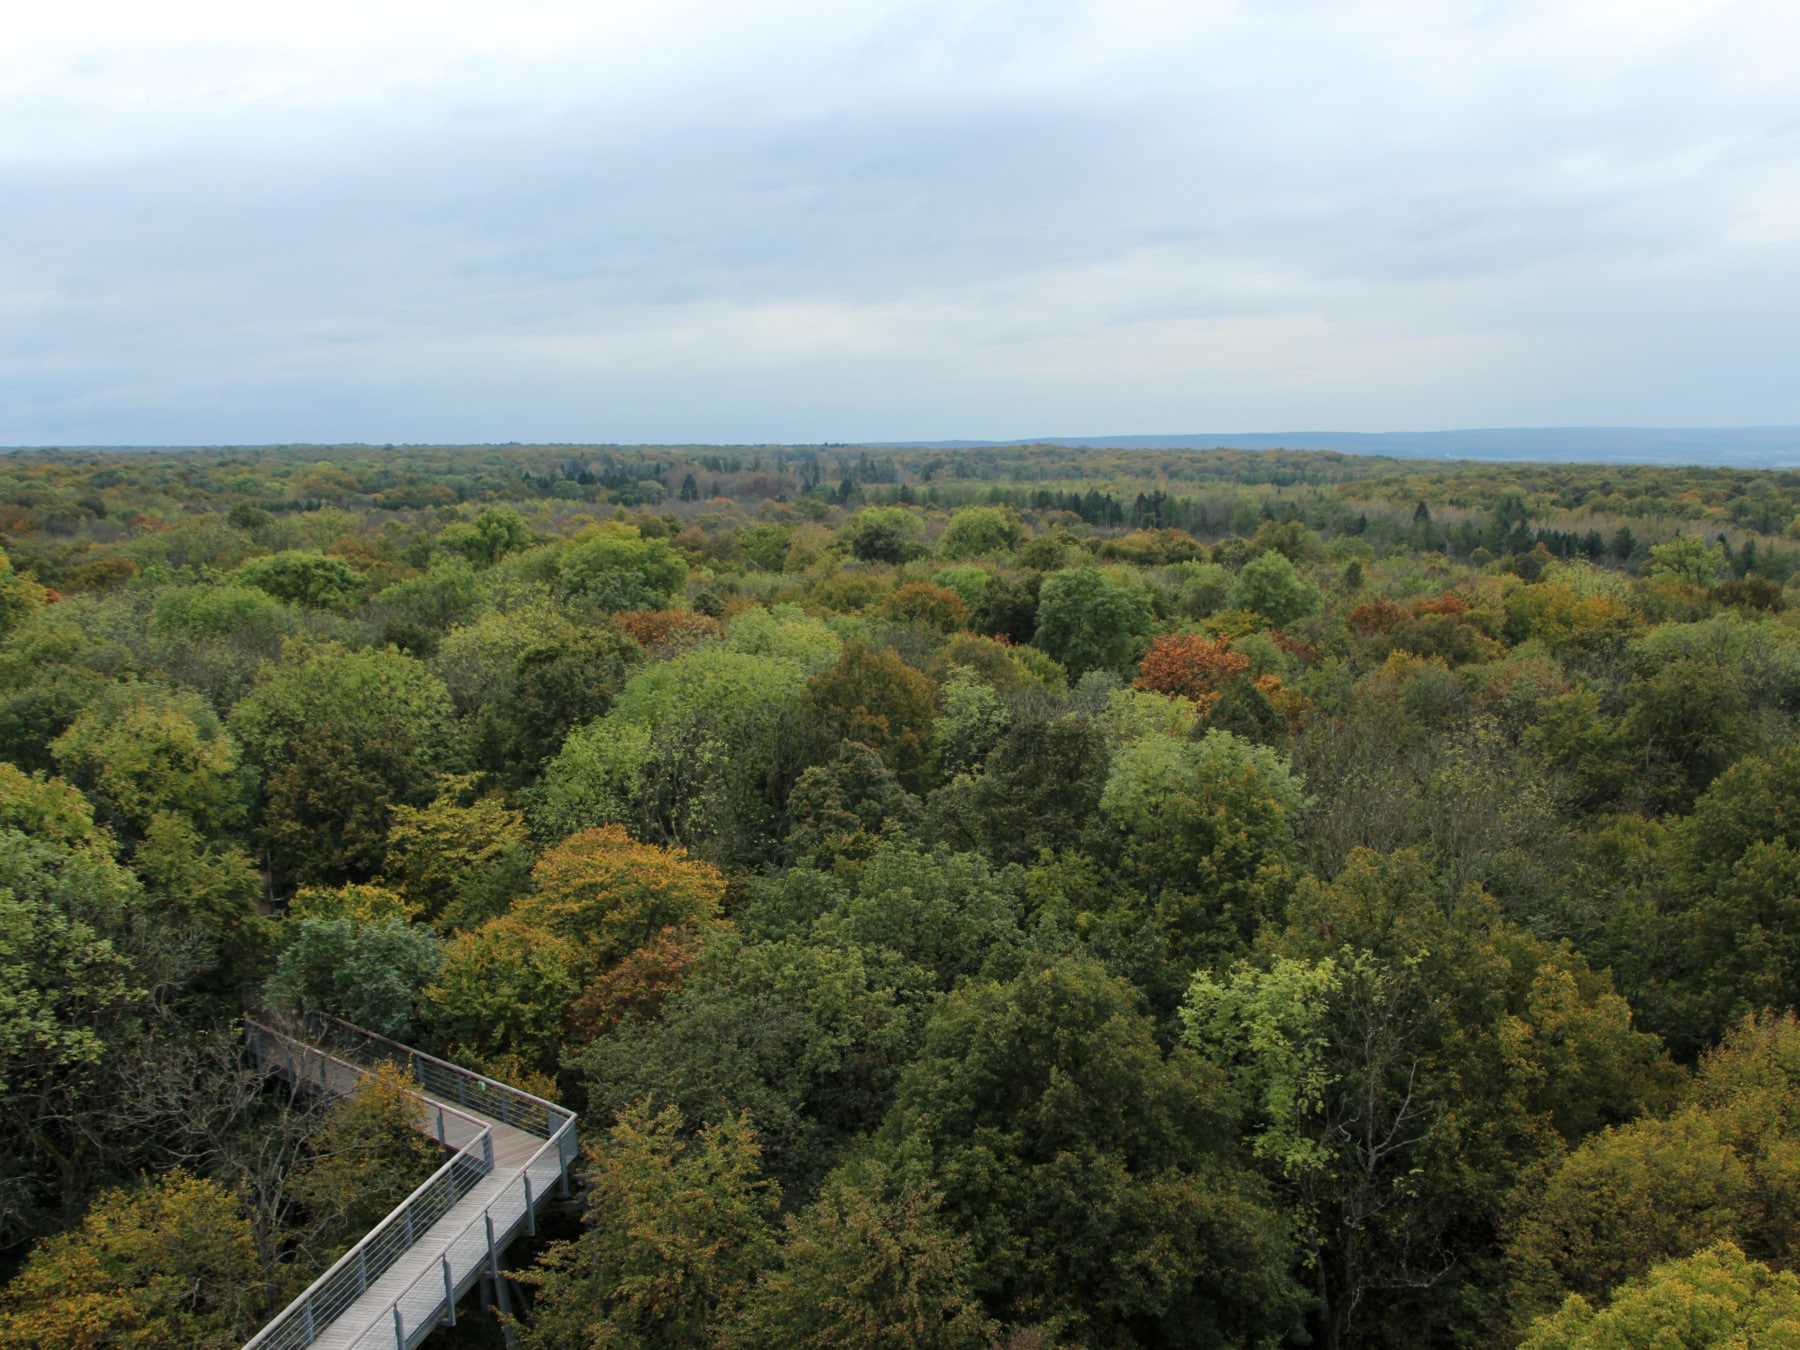 Abbildung: Das Foto zeigt einen Panorama-Blick über die Baumkronen des Walds im Nationalpark Hainich. Unten rechts ist ein Teil eines auf Stelzen errichteten Baumwipfel-Pfades zu sehen.